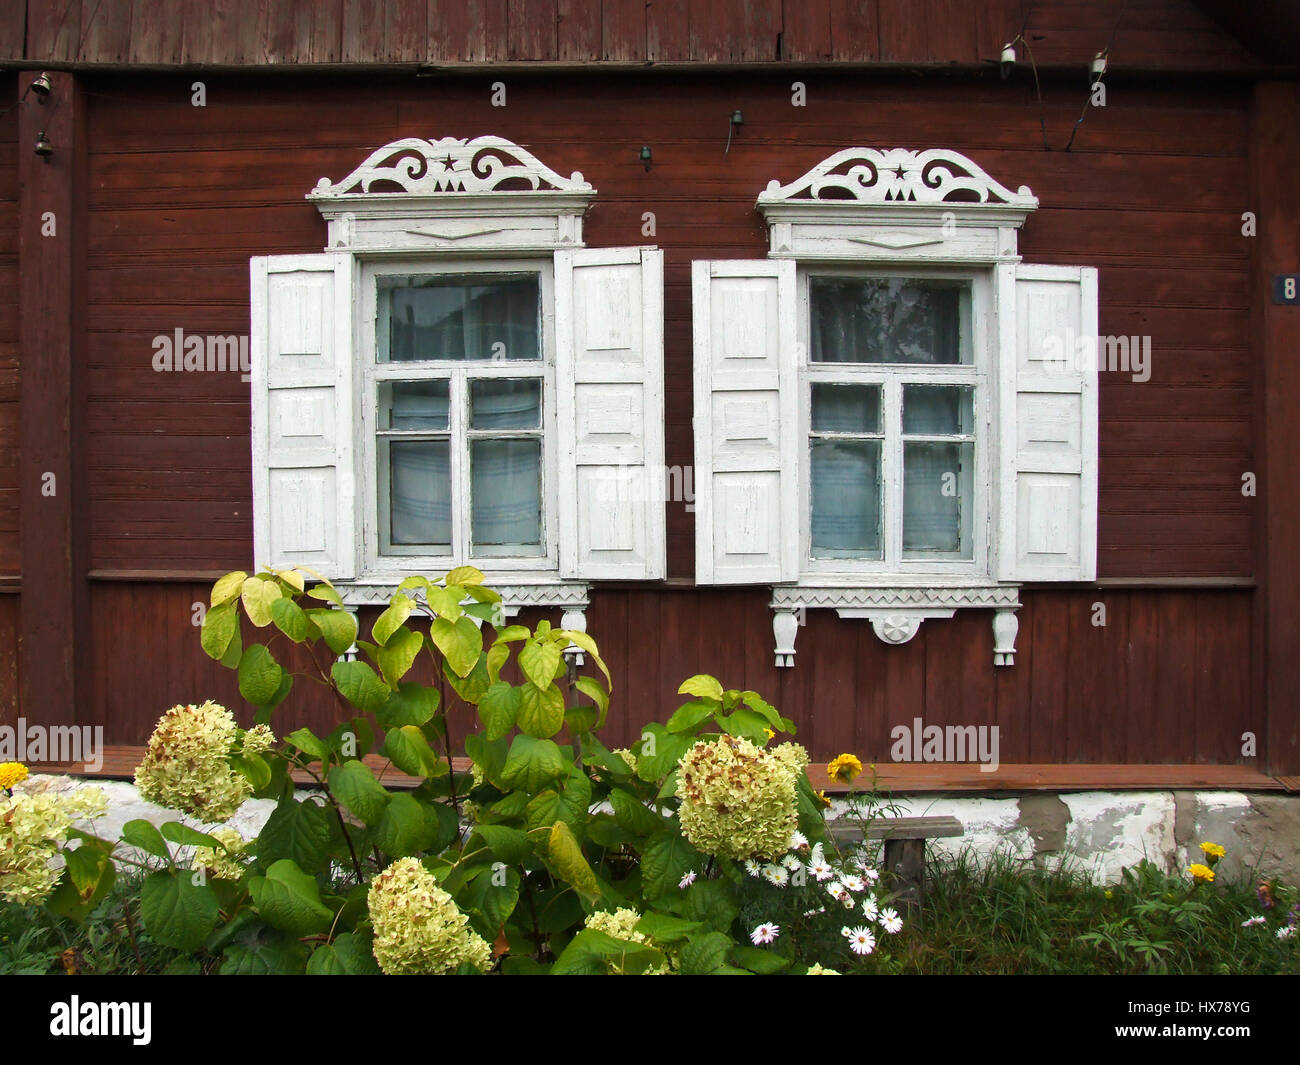 Molduras decorativas de madera fotografías e imágenes de alta resolución -  Alamy